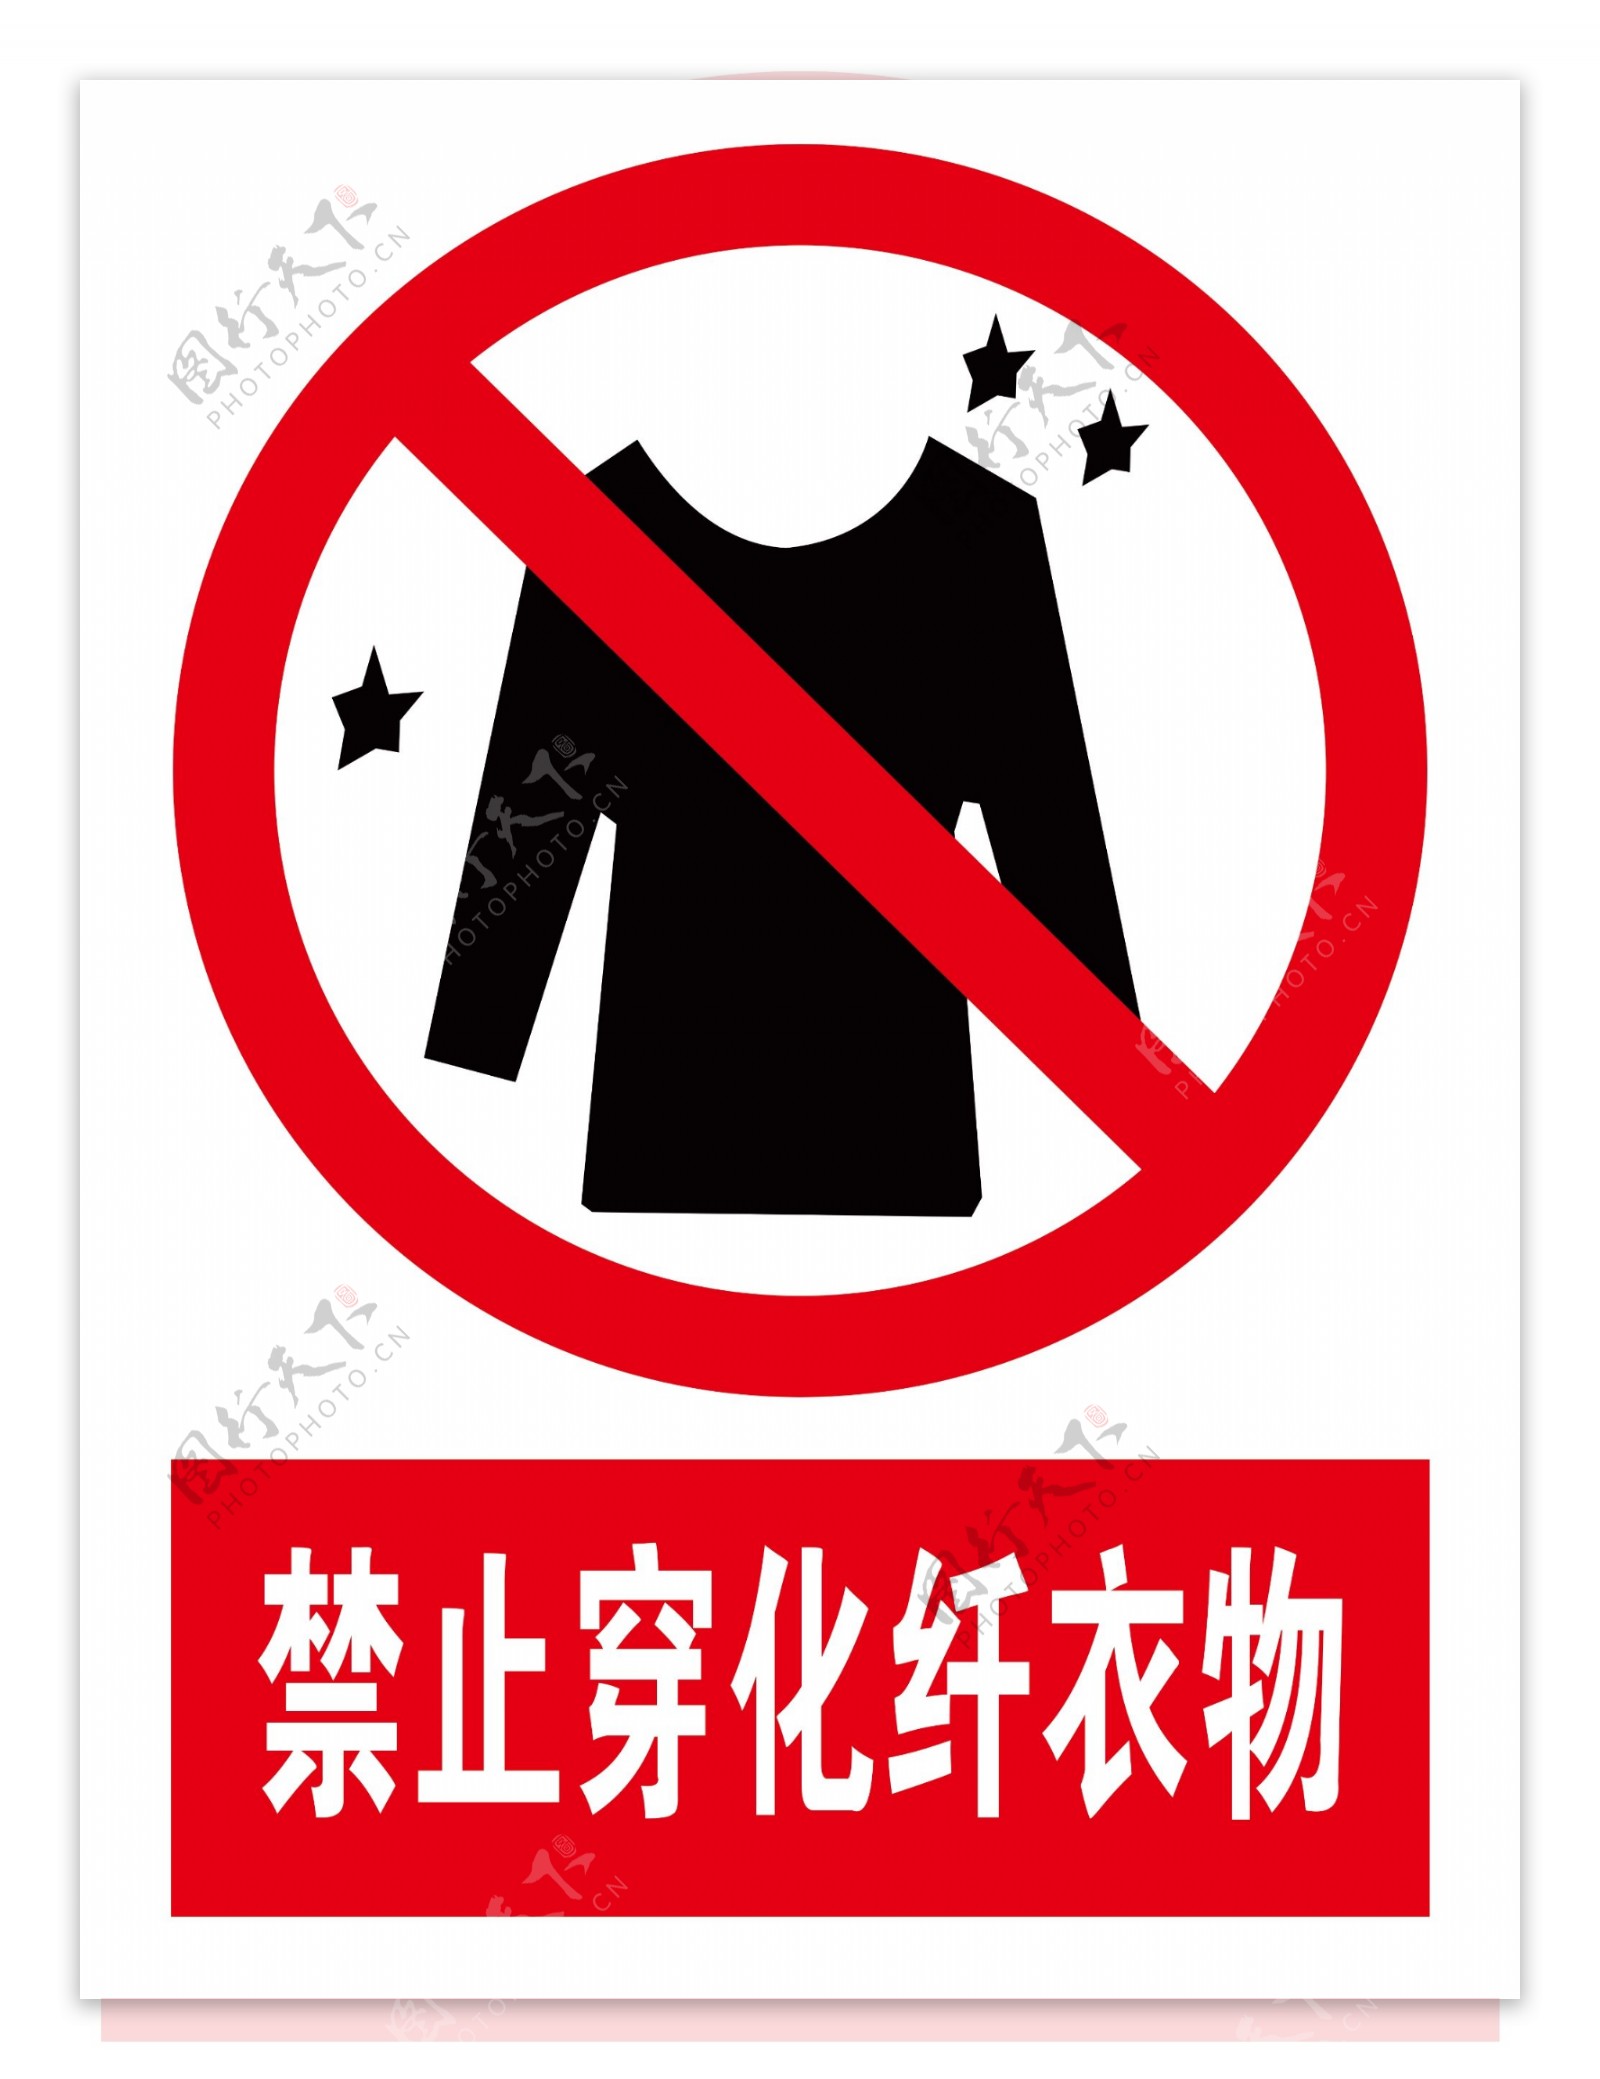 禁止穿化纤衣物